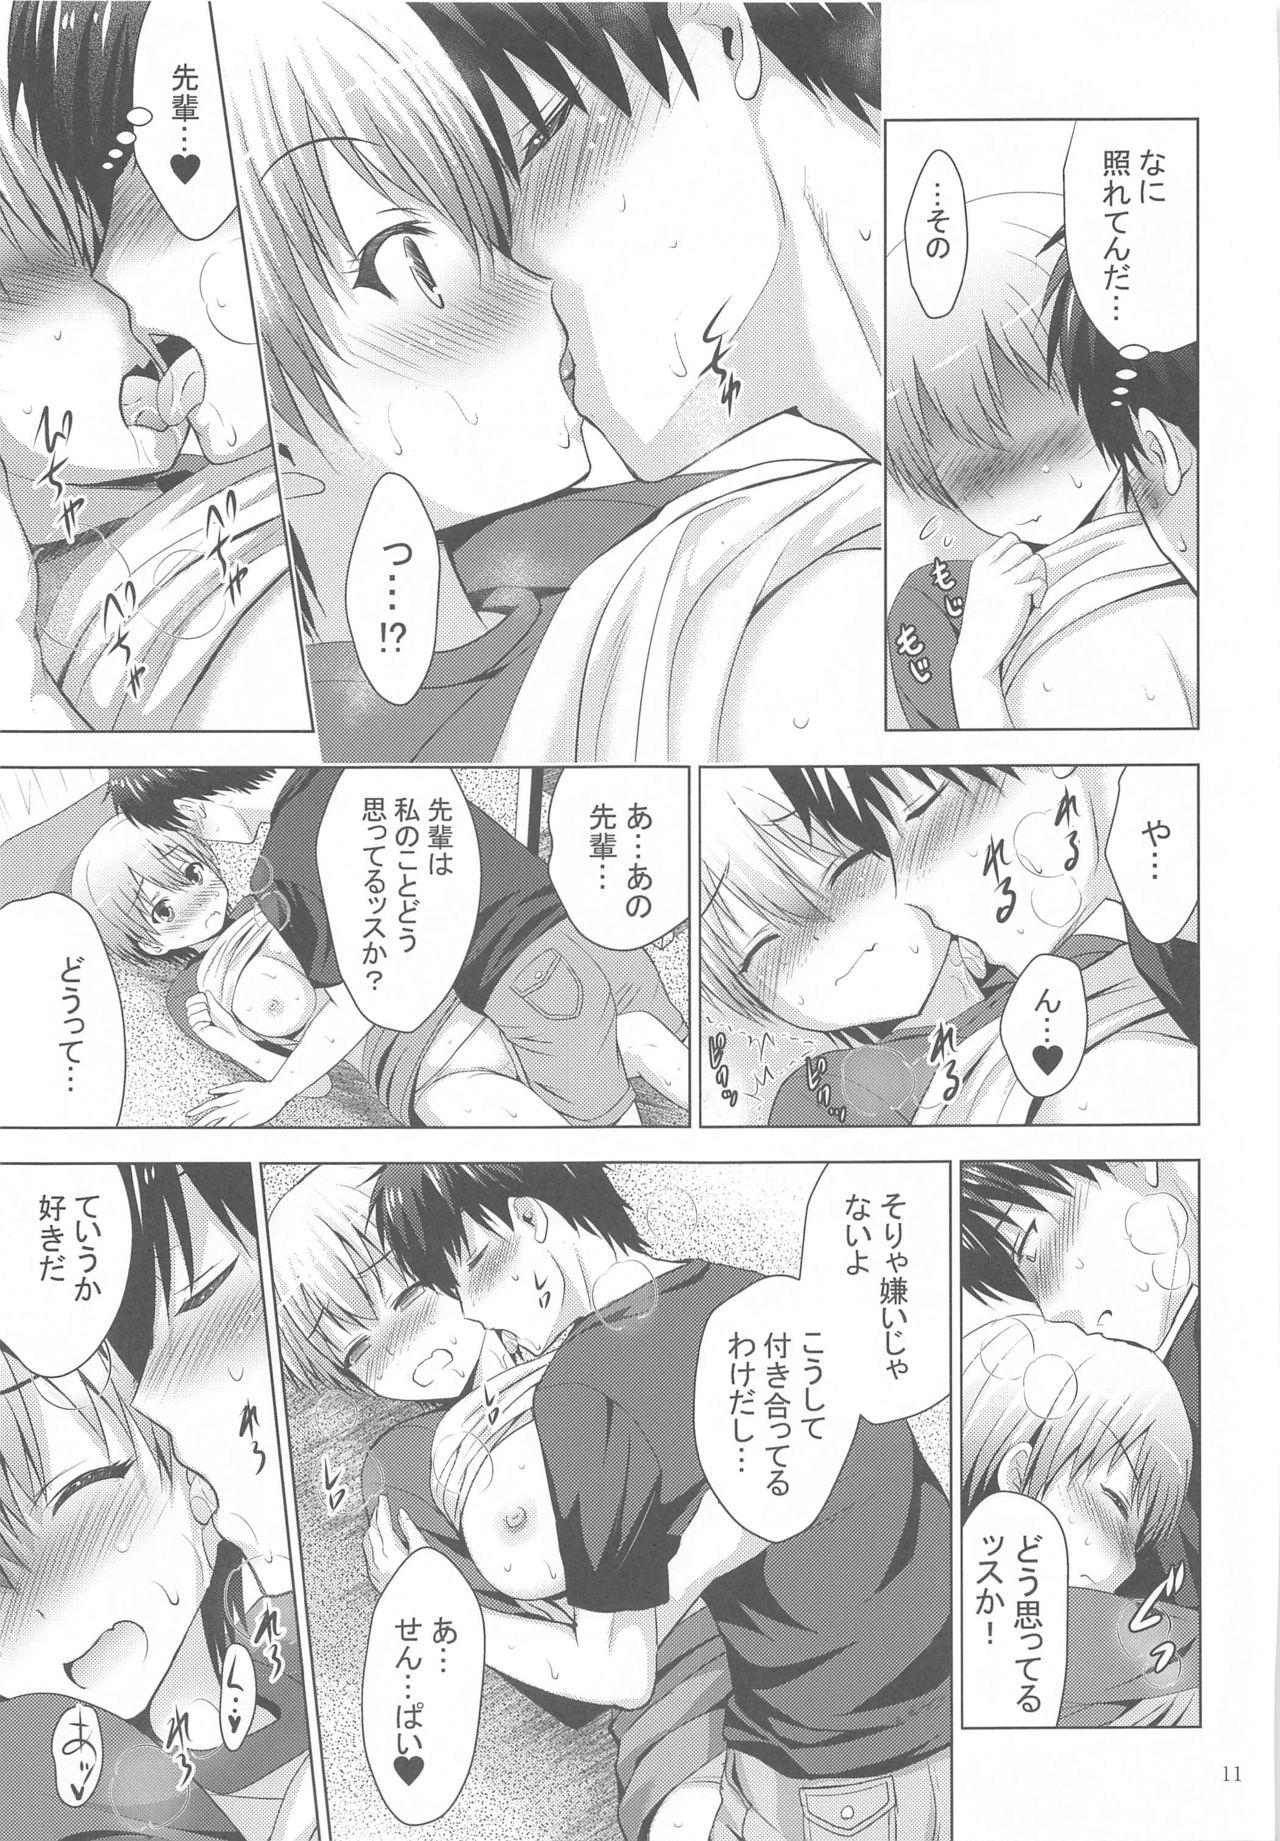 Massage Creep MOUSOU THEATER 64 - Uzaki-chan wa asobitai Flexible - Page 10